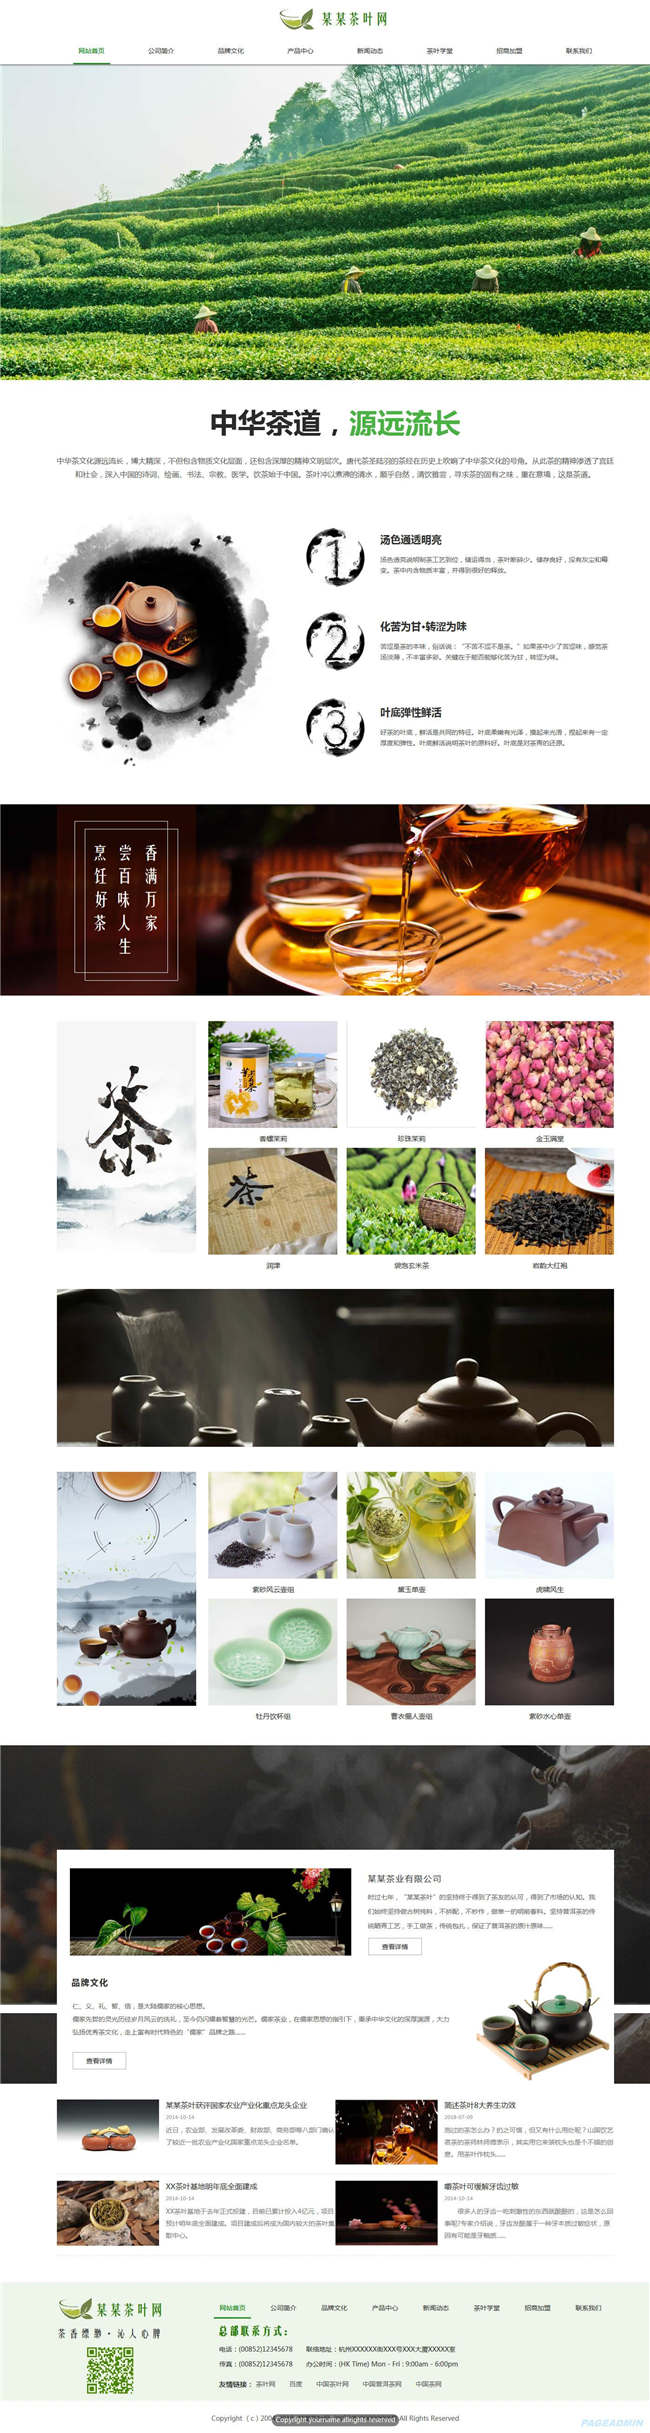 茶叶公司食品饮料生鲜茶酒网站Wordpress模板(带手机站)预览图